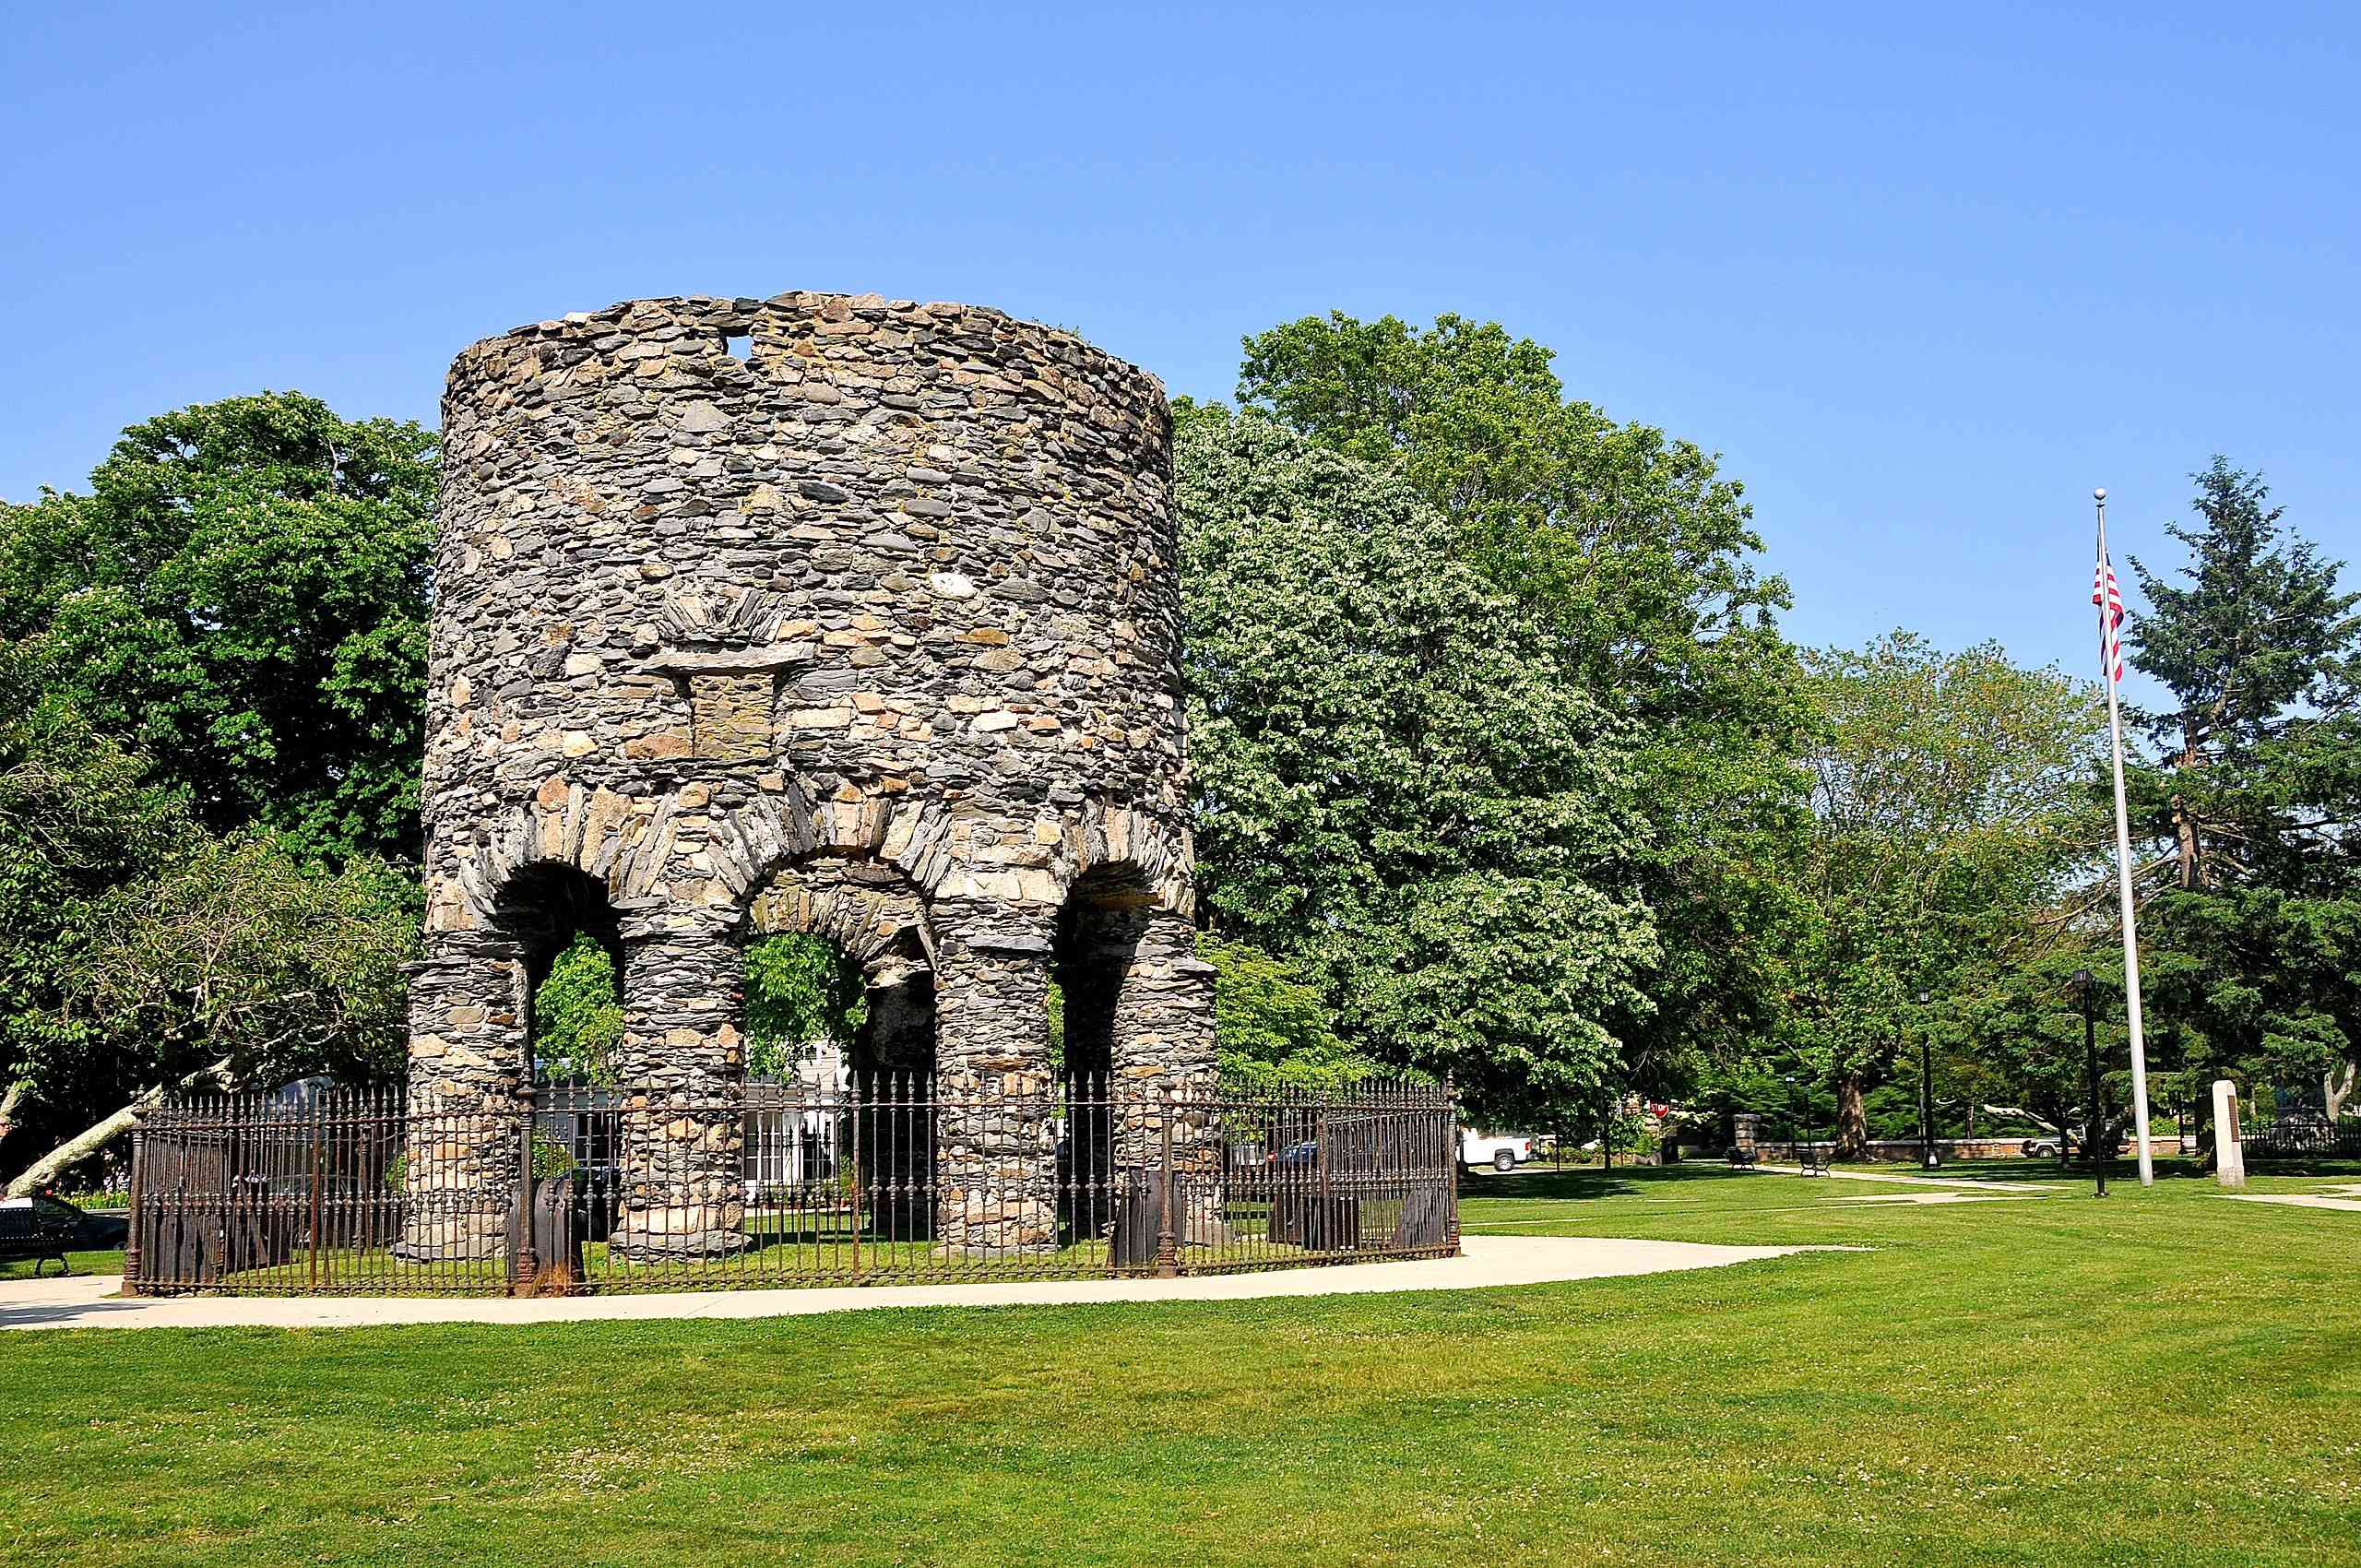 Torre redonda de piedra situada en medio de un parque cubierto de hierba